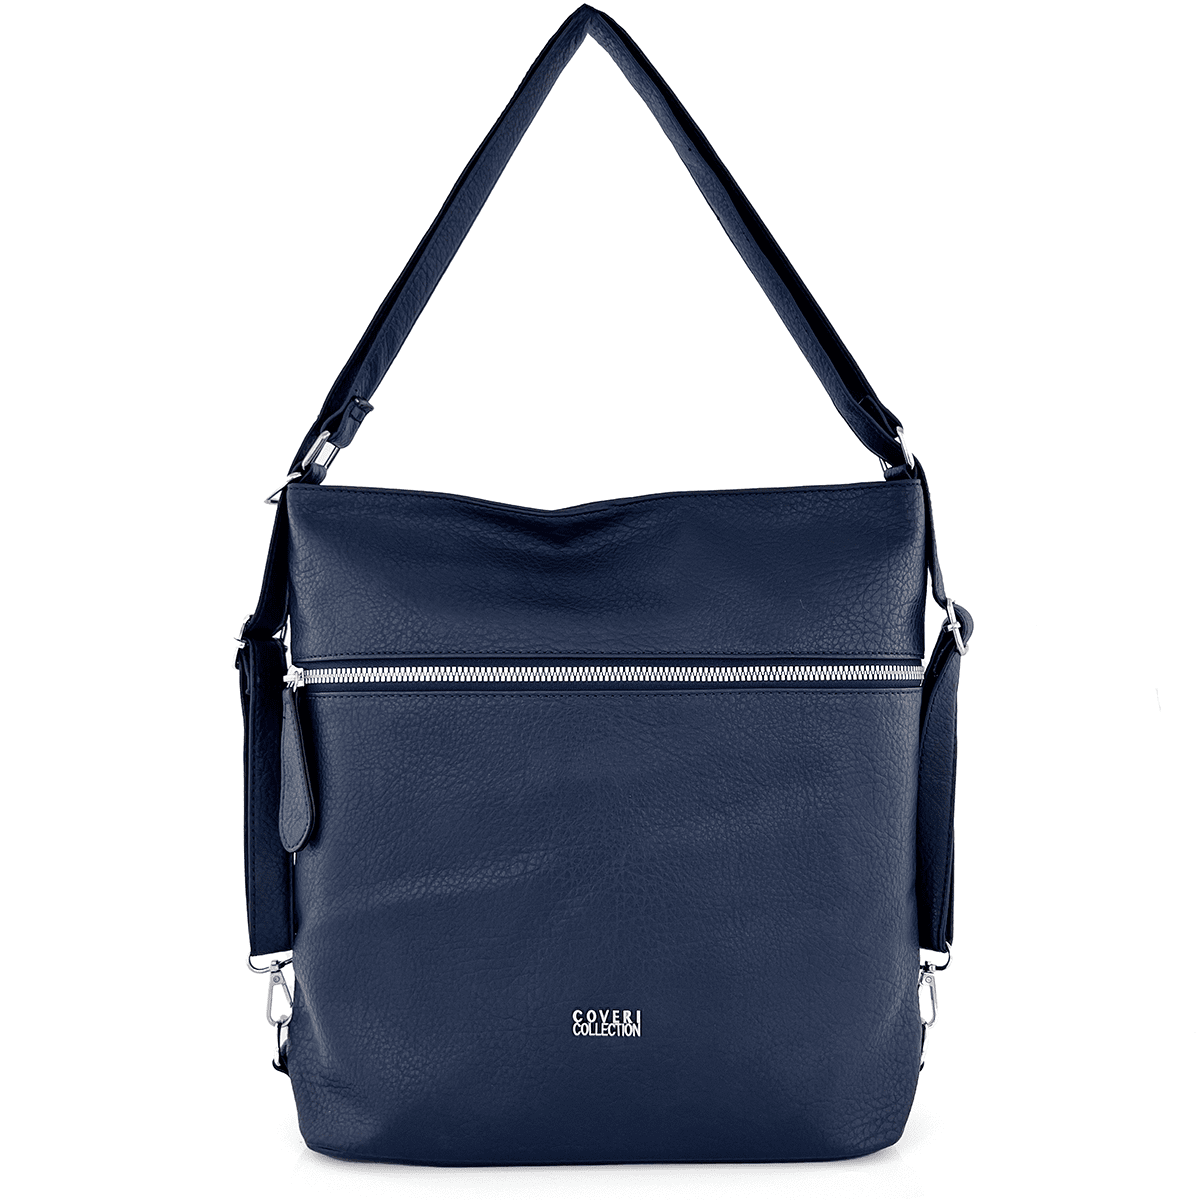 2 в 1 - Голяма чанта и раница подходяща за ежедневието - тъмно синя 